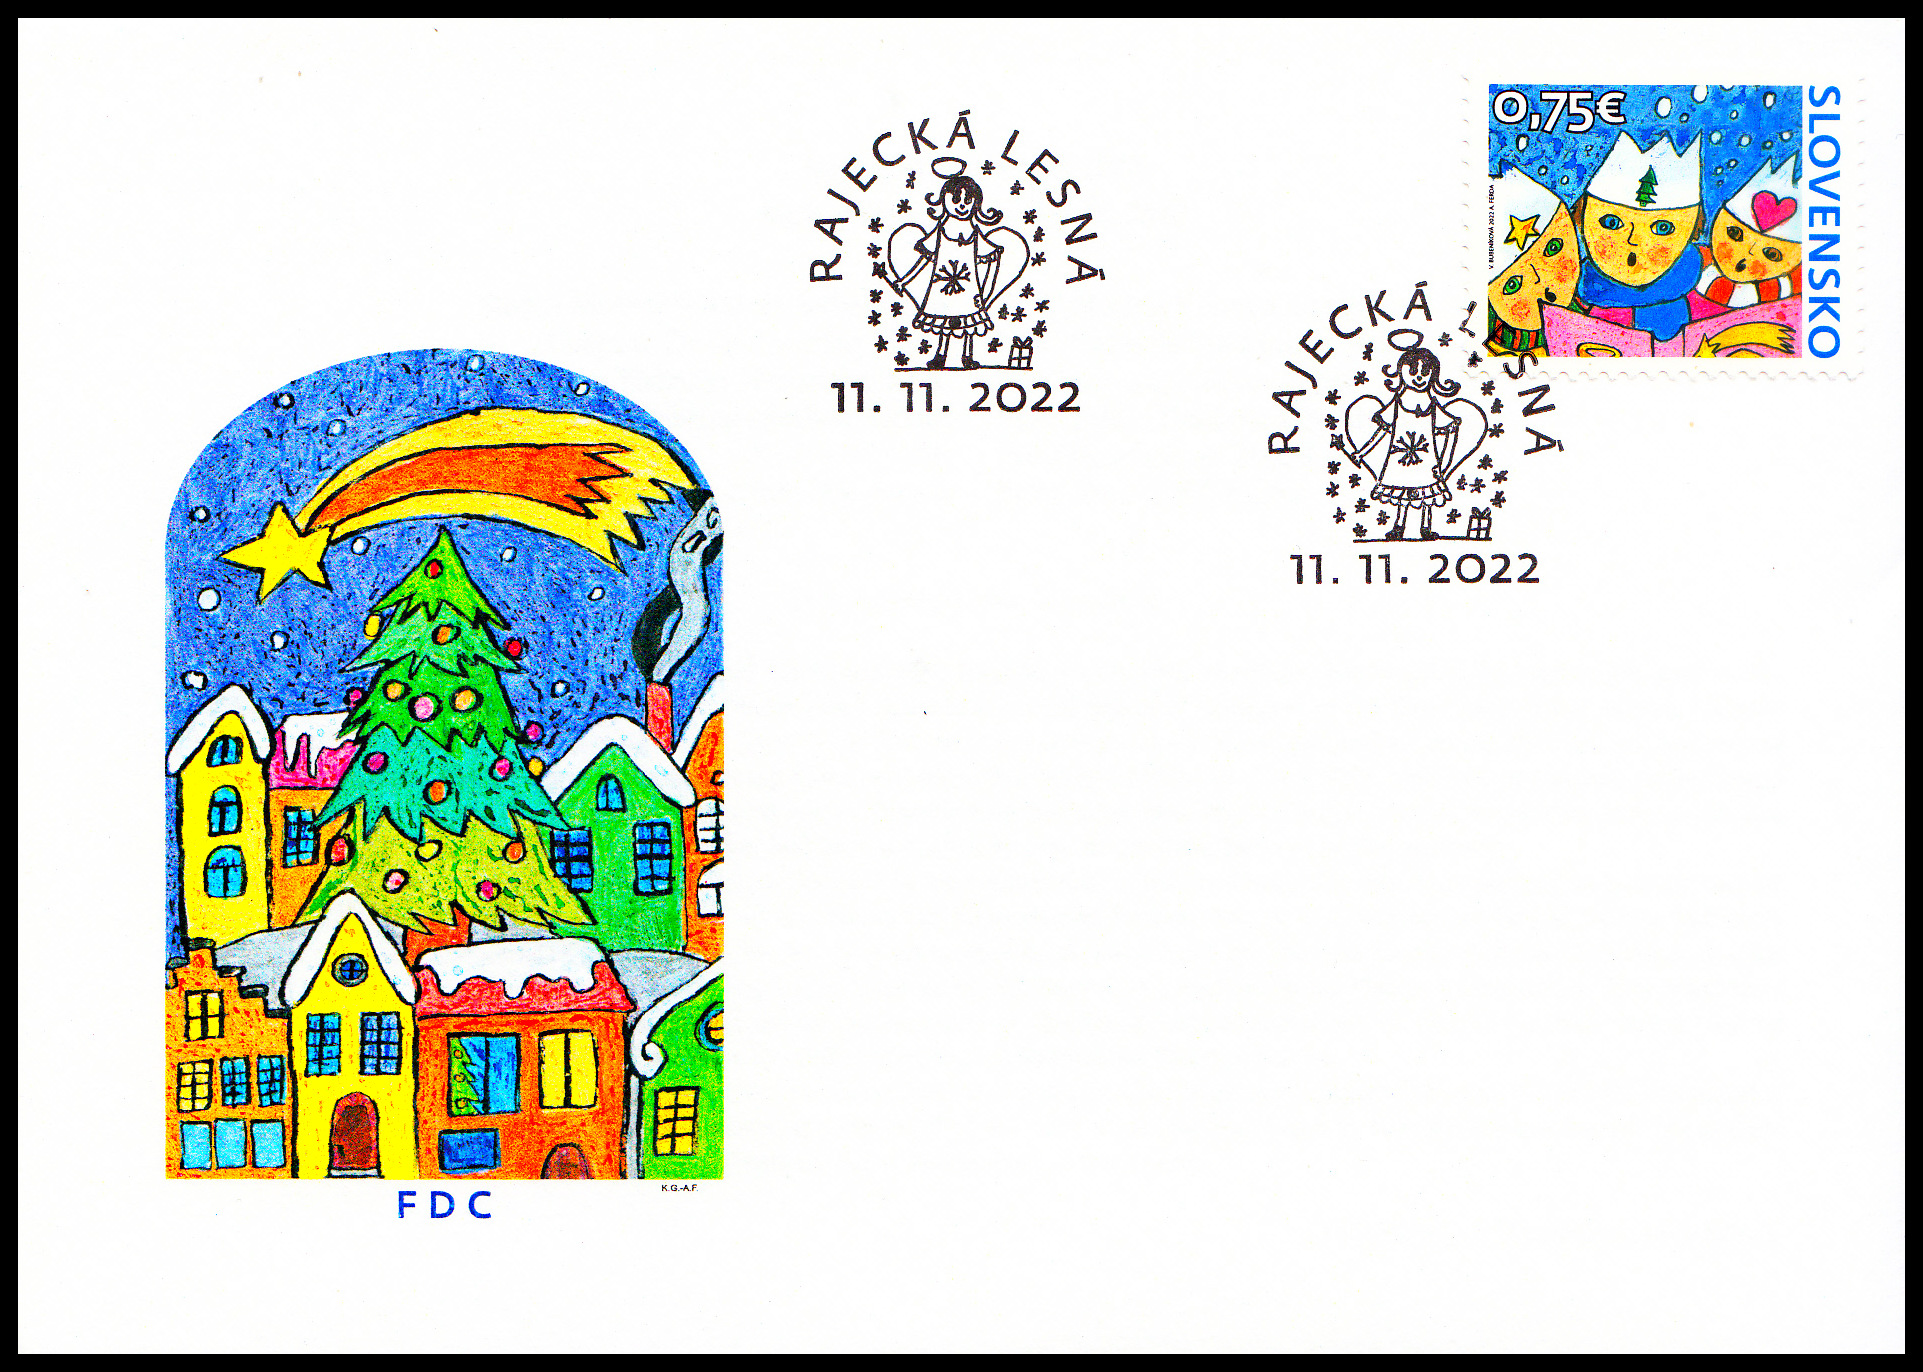 FDC - Vánoční pošta 2022